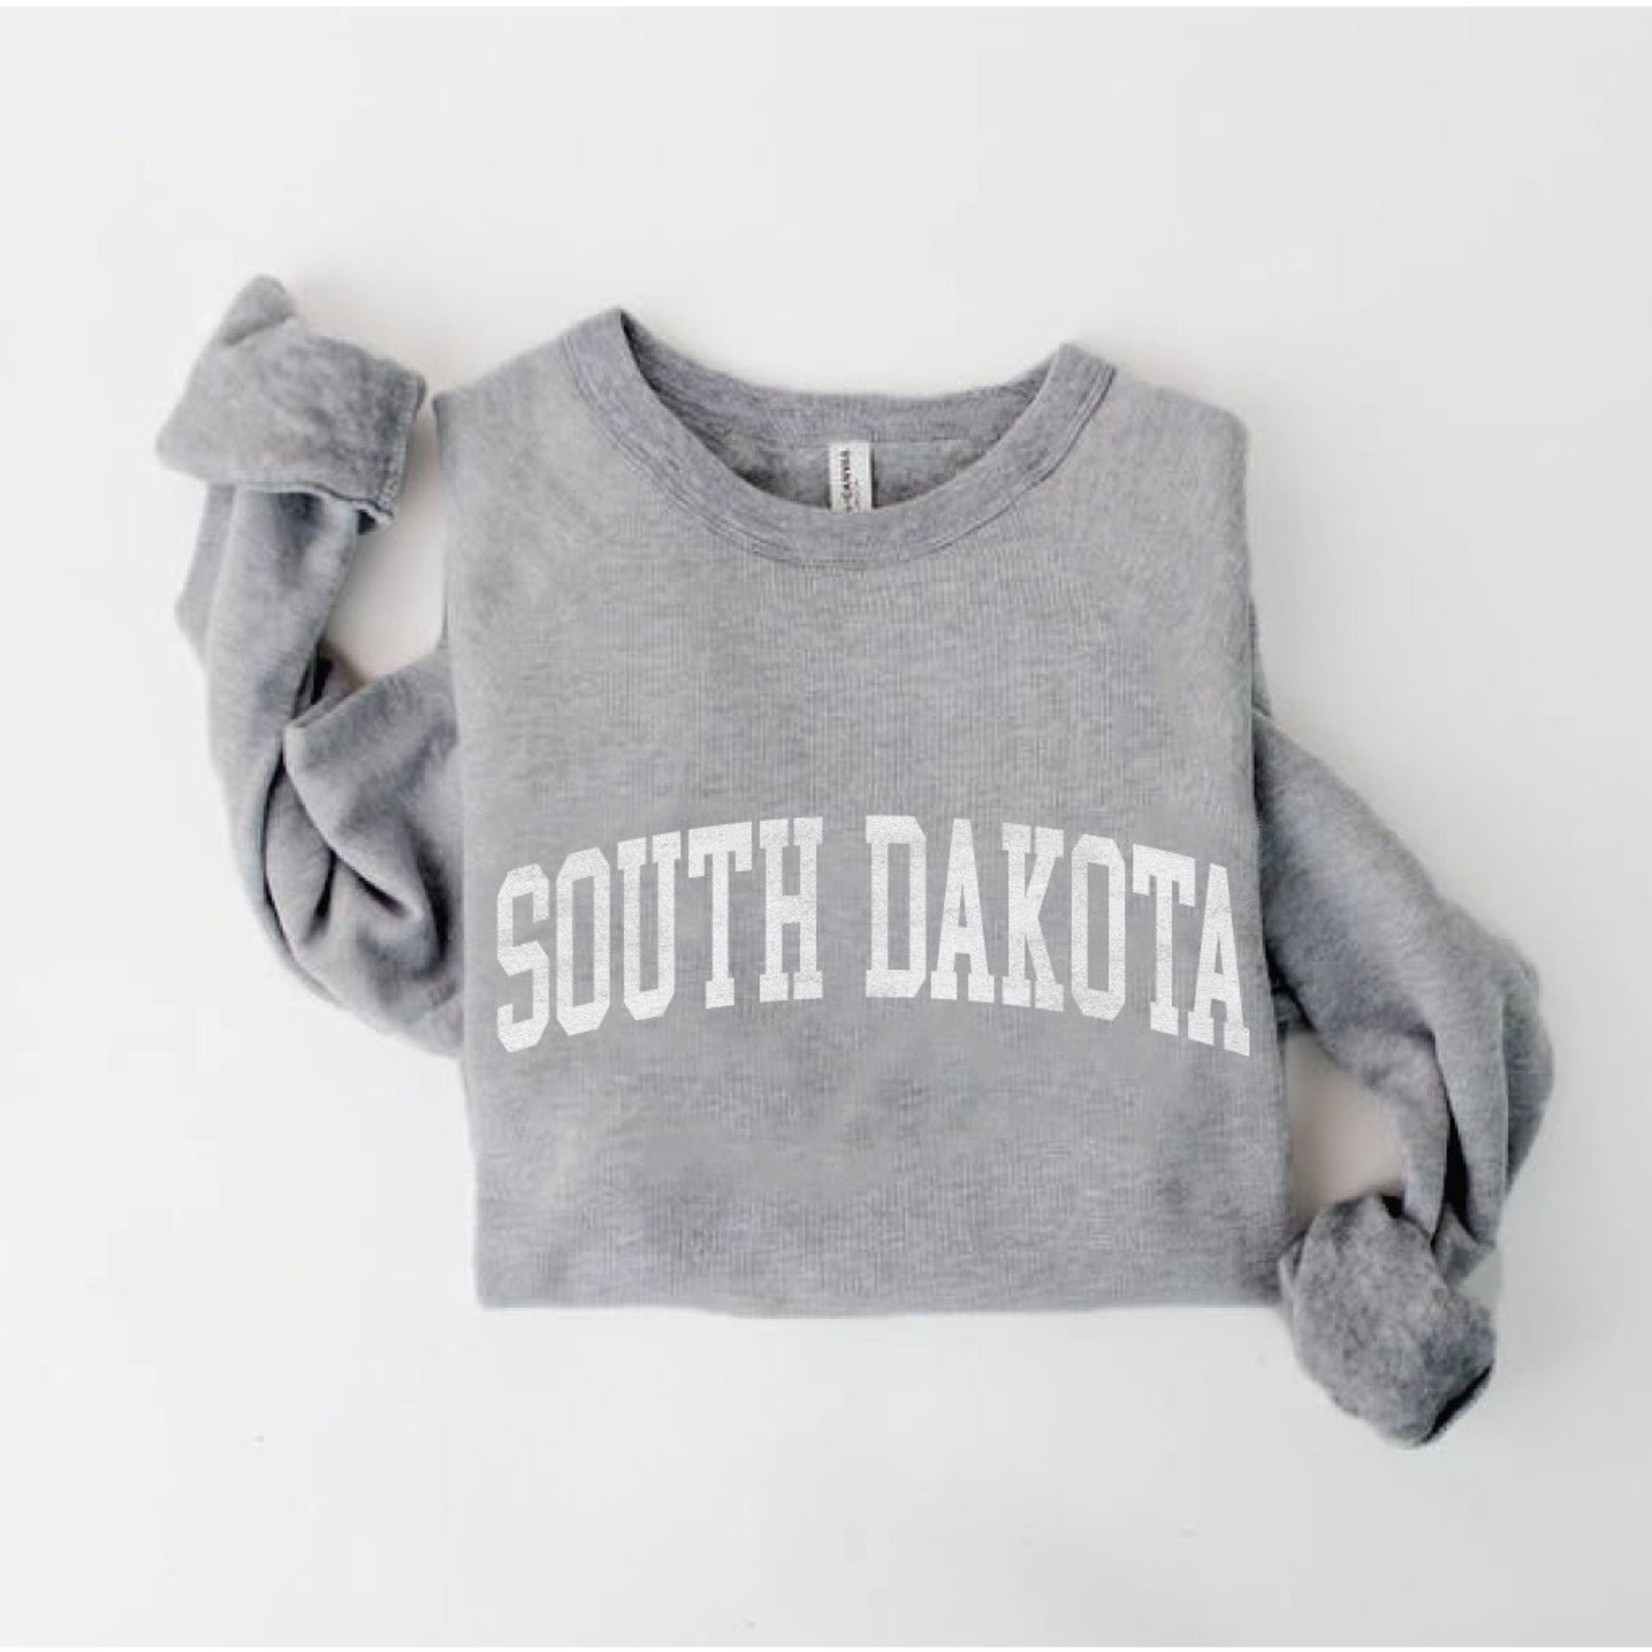 Oat Collective Sweatshirt - South Dakota, Athletic Grey